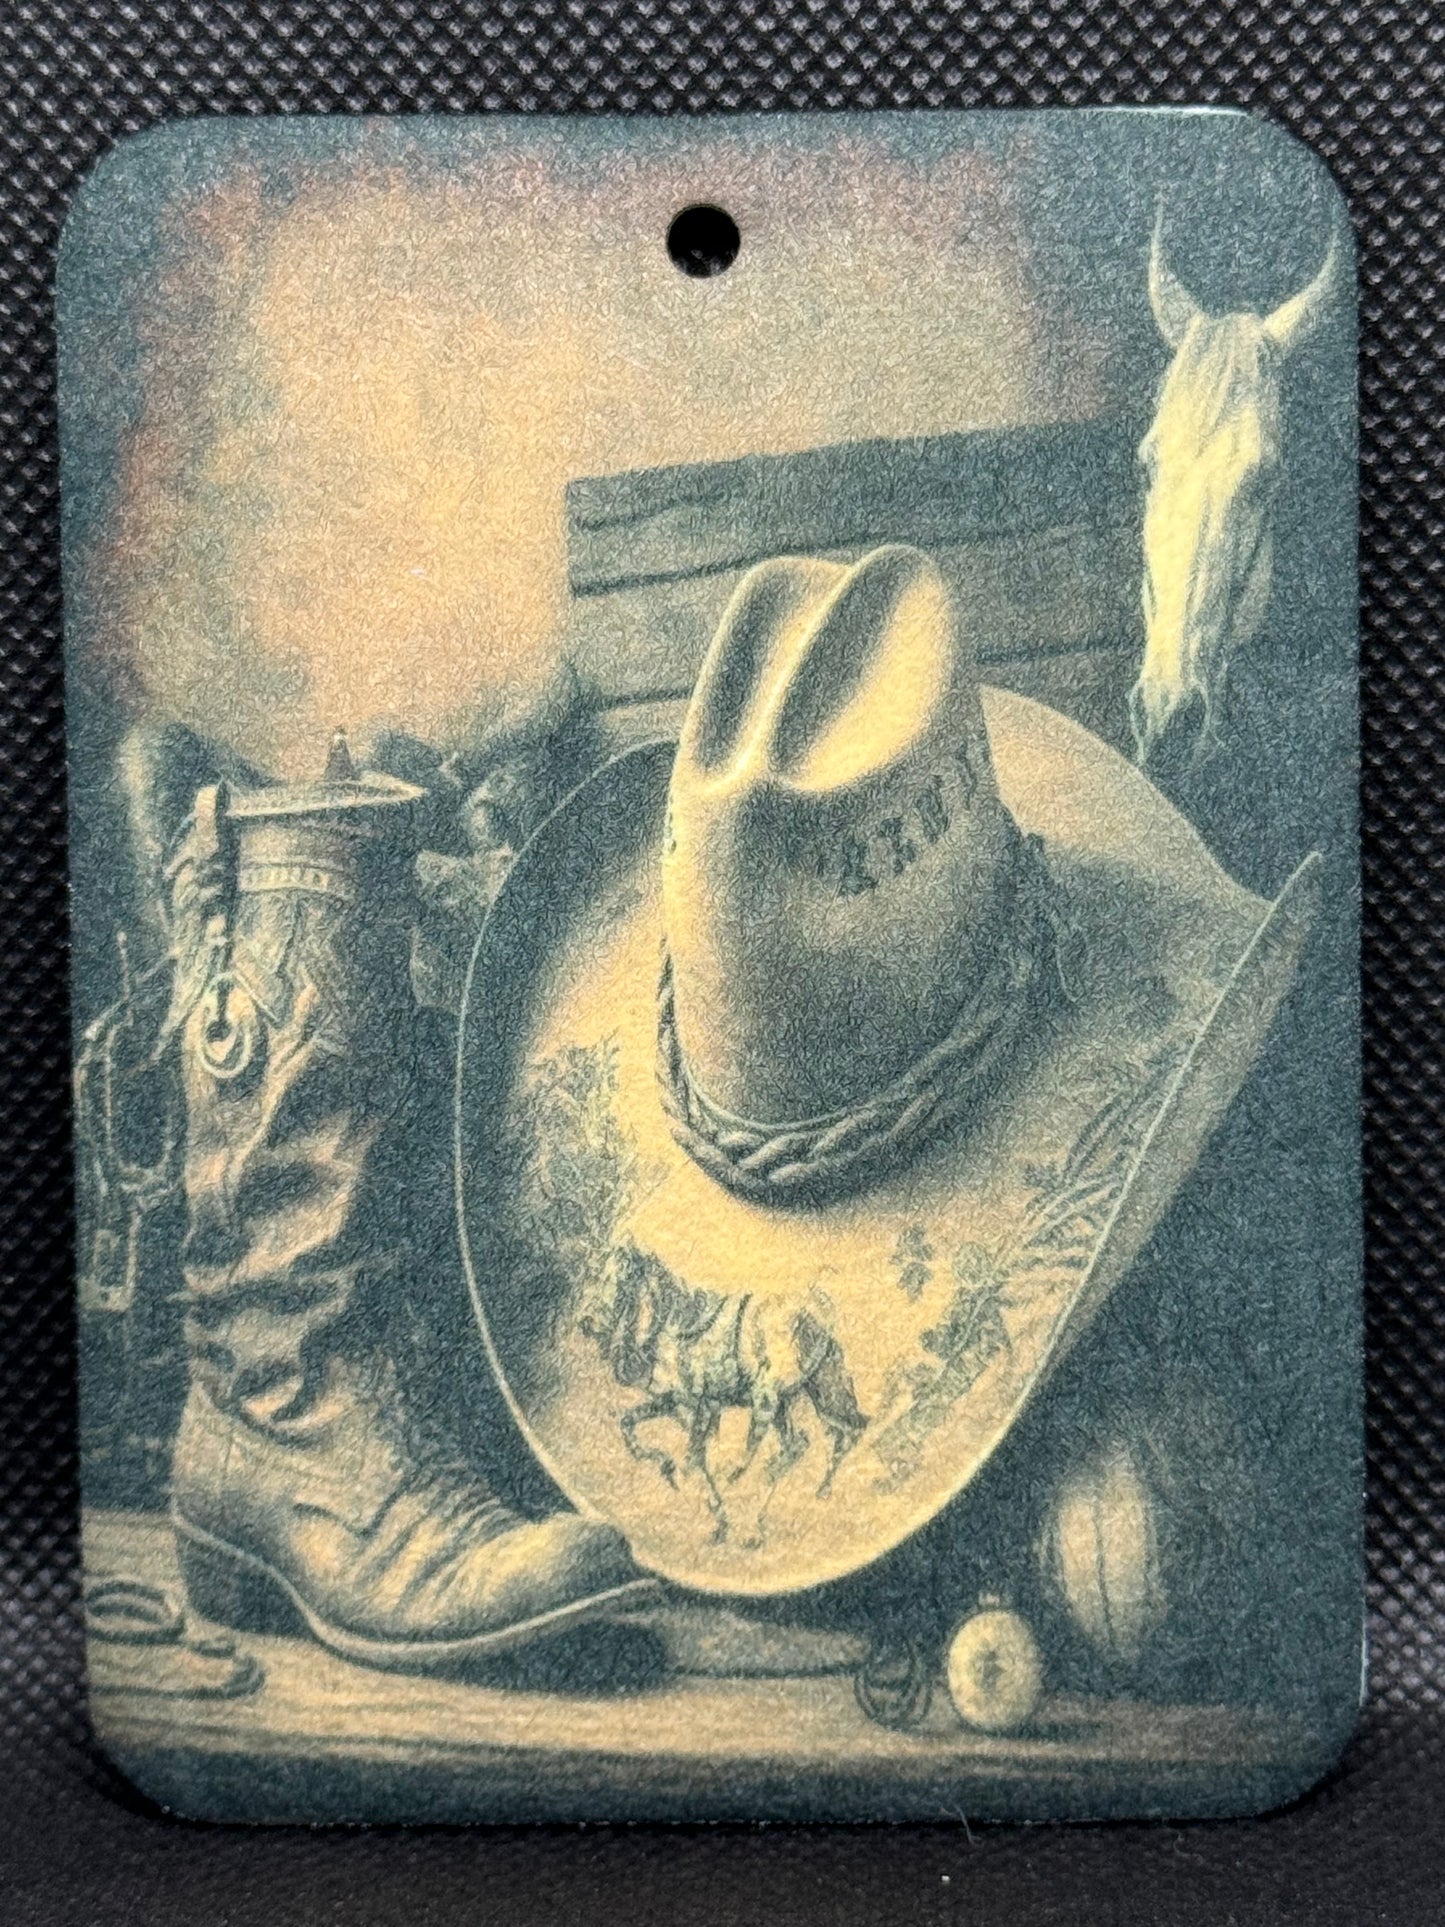 Wild West Cowboy Hat and Boot Vintage Felt Freshie 1339